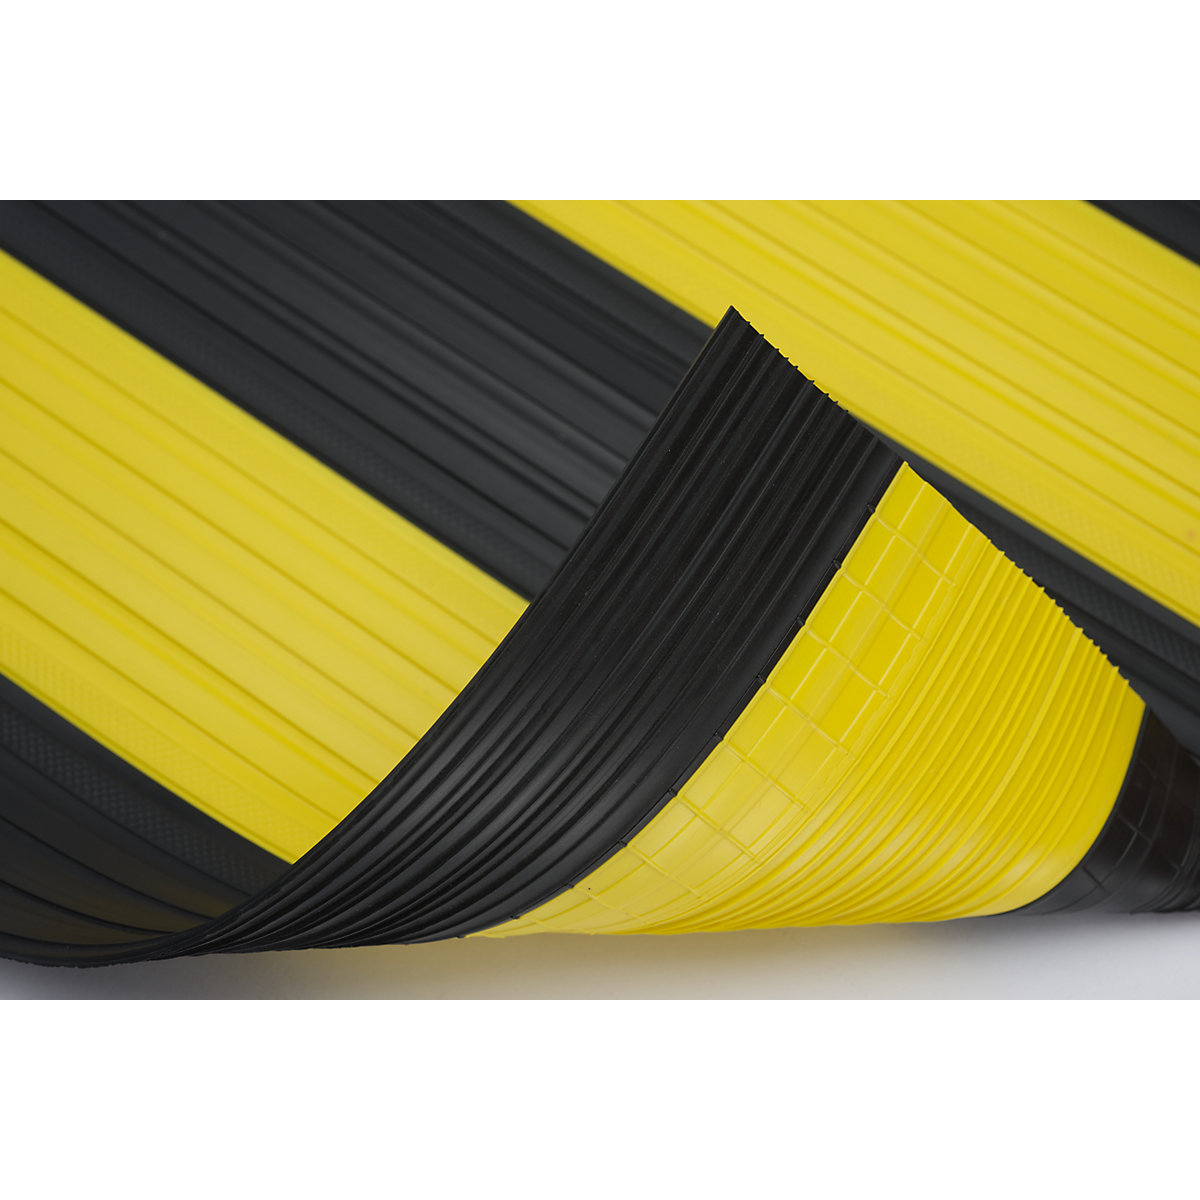 Weich-PVC-Läufer, mit geschlossener Oberfläche, pro lfd. m, schwarz-gelb, Breite 600 mm-3